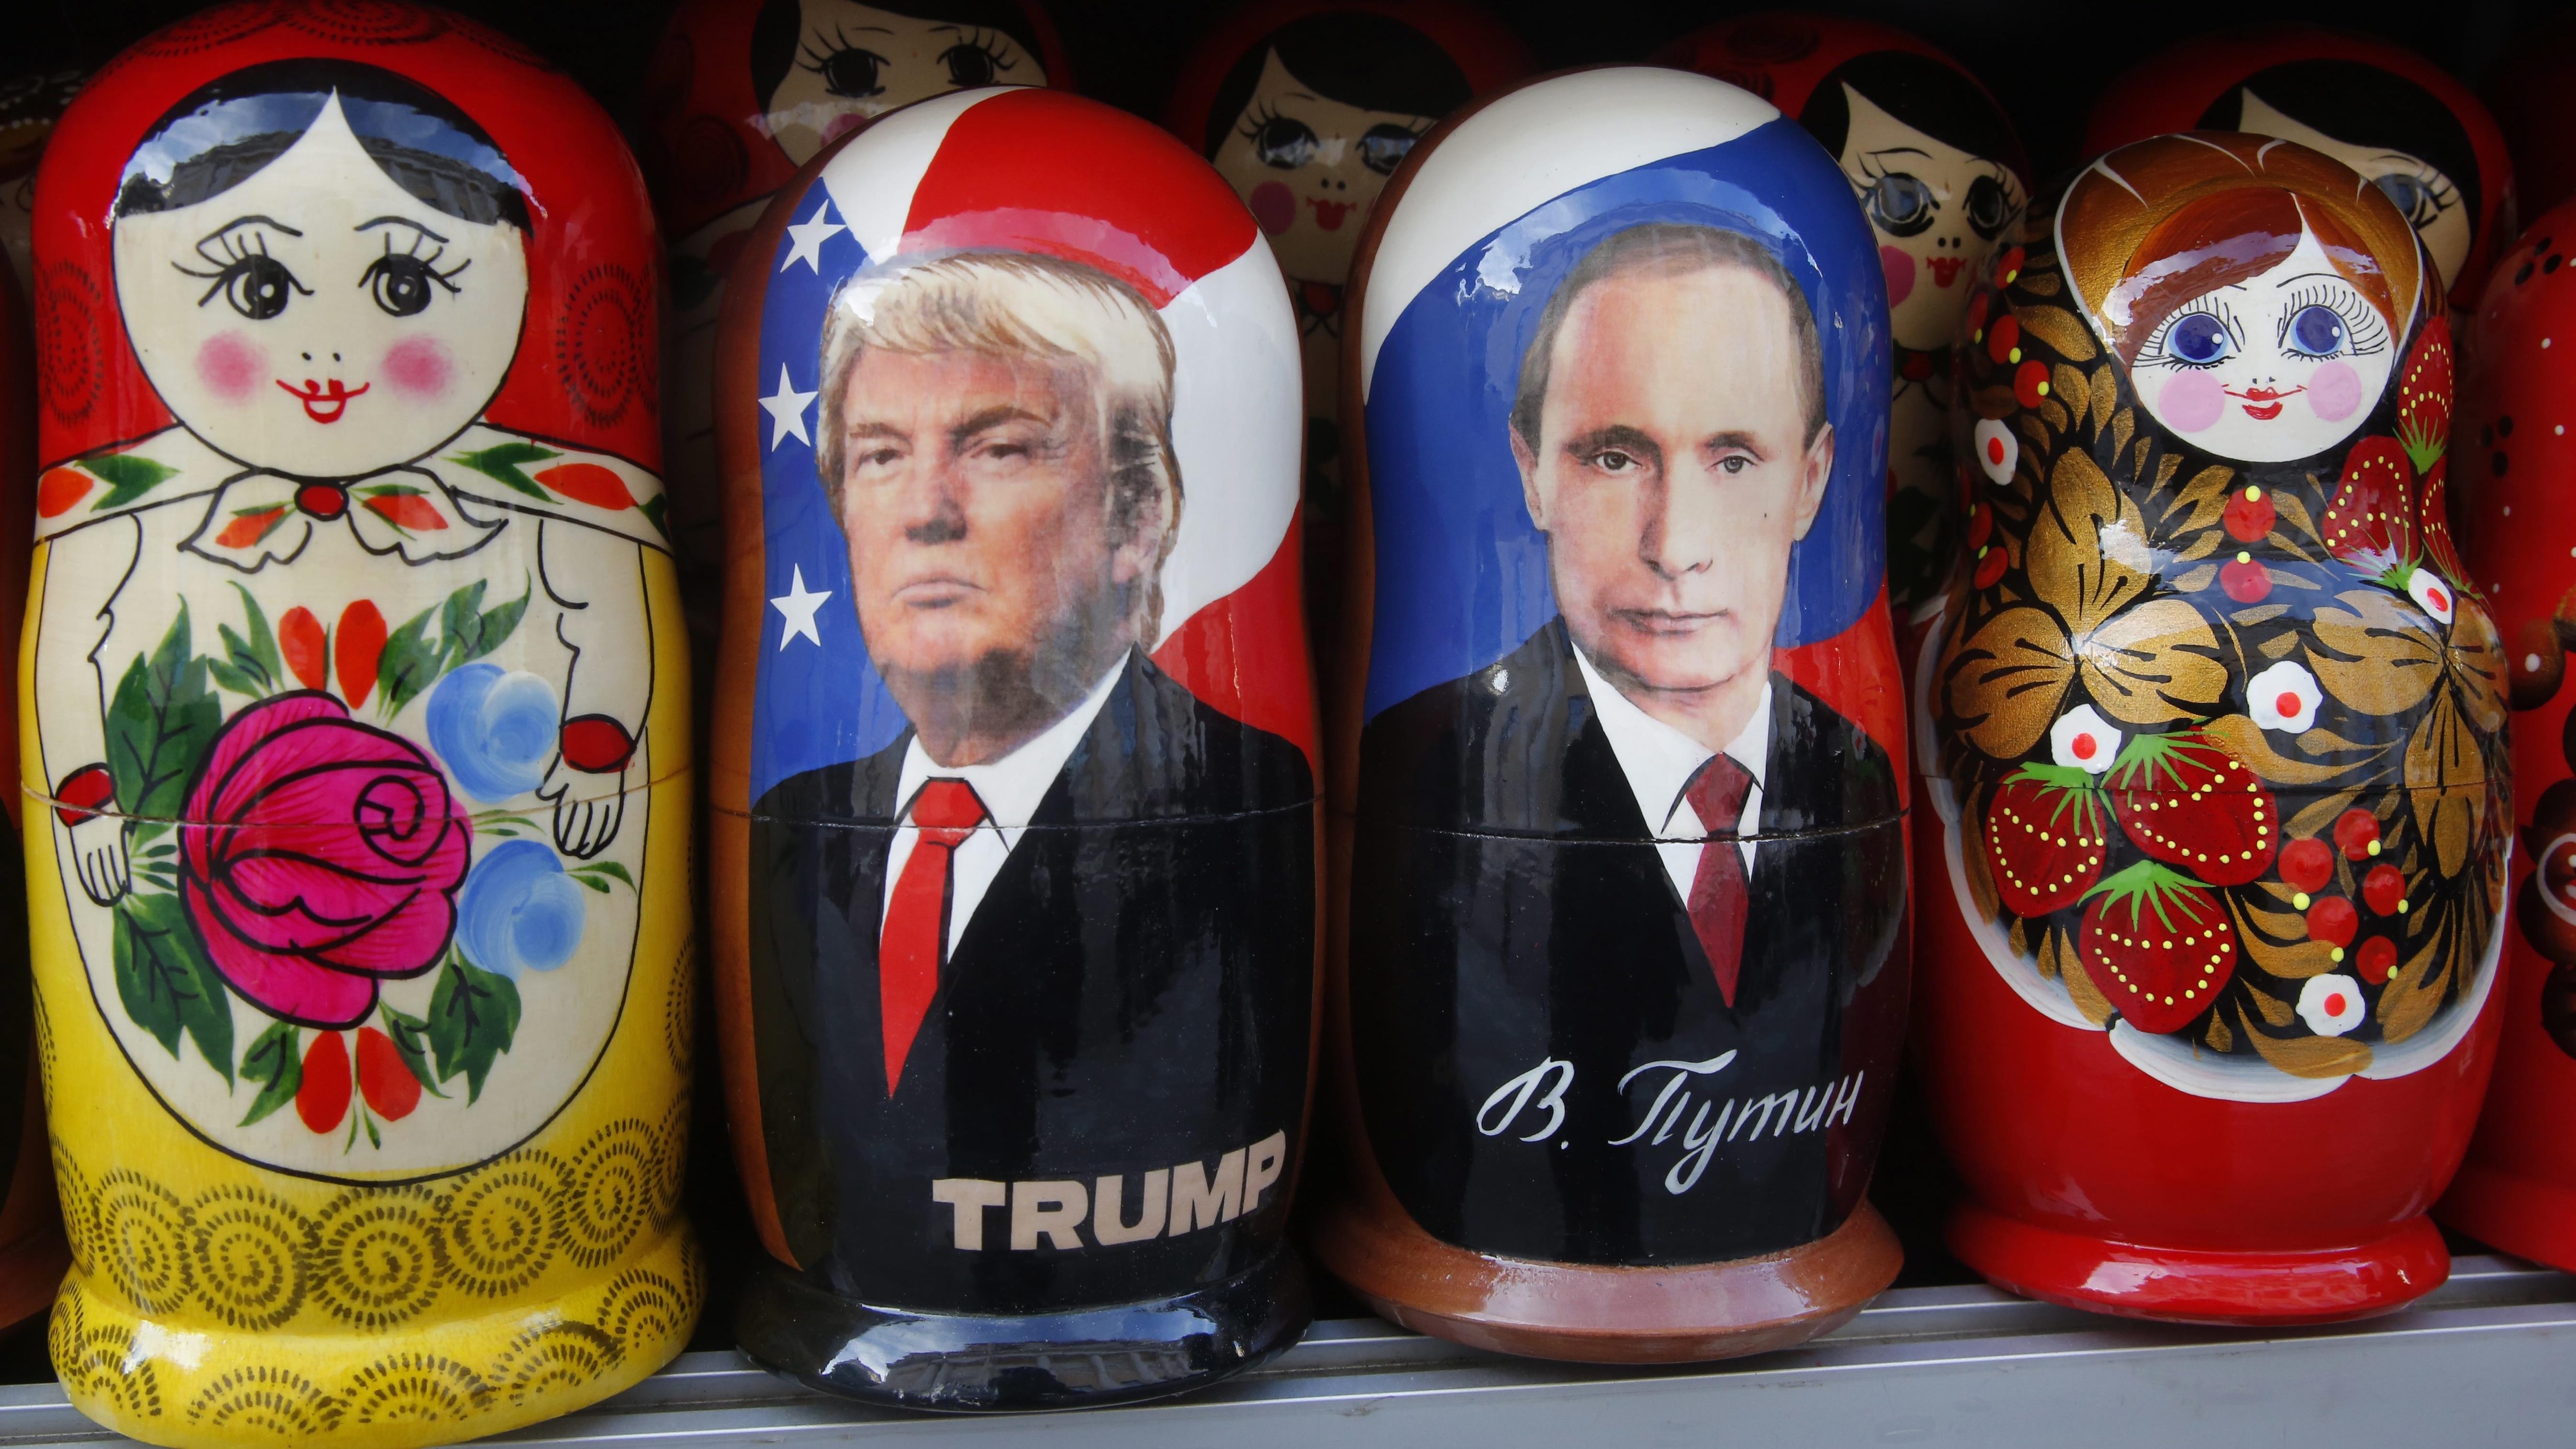 La Russie se réjouit de l'accession de Donald Trump à la présidence des États-Unis